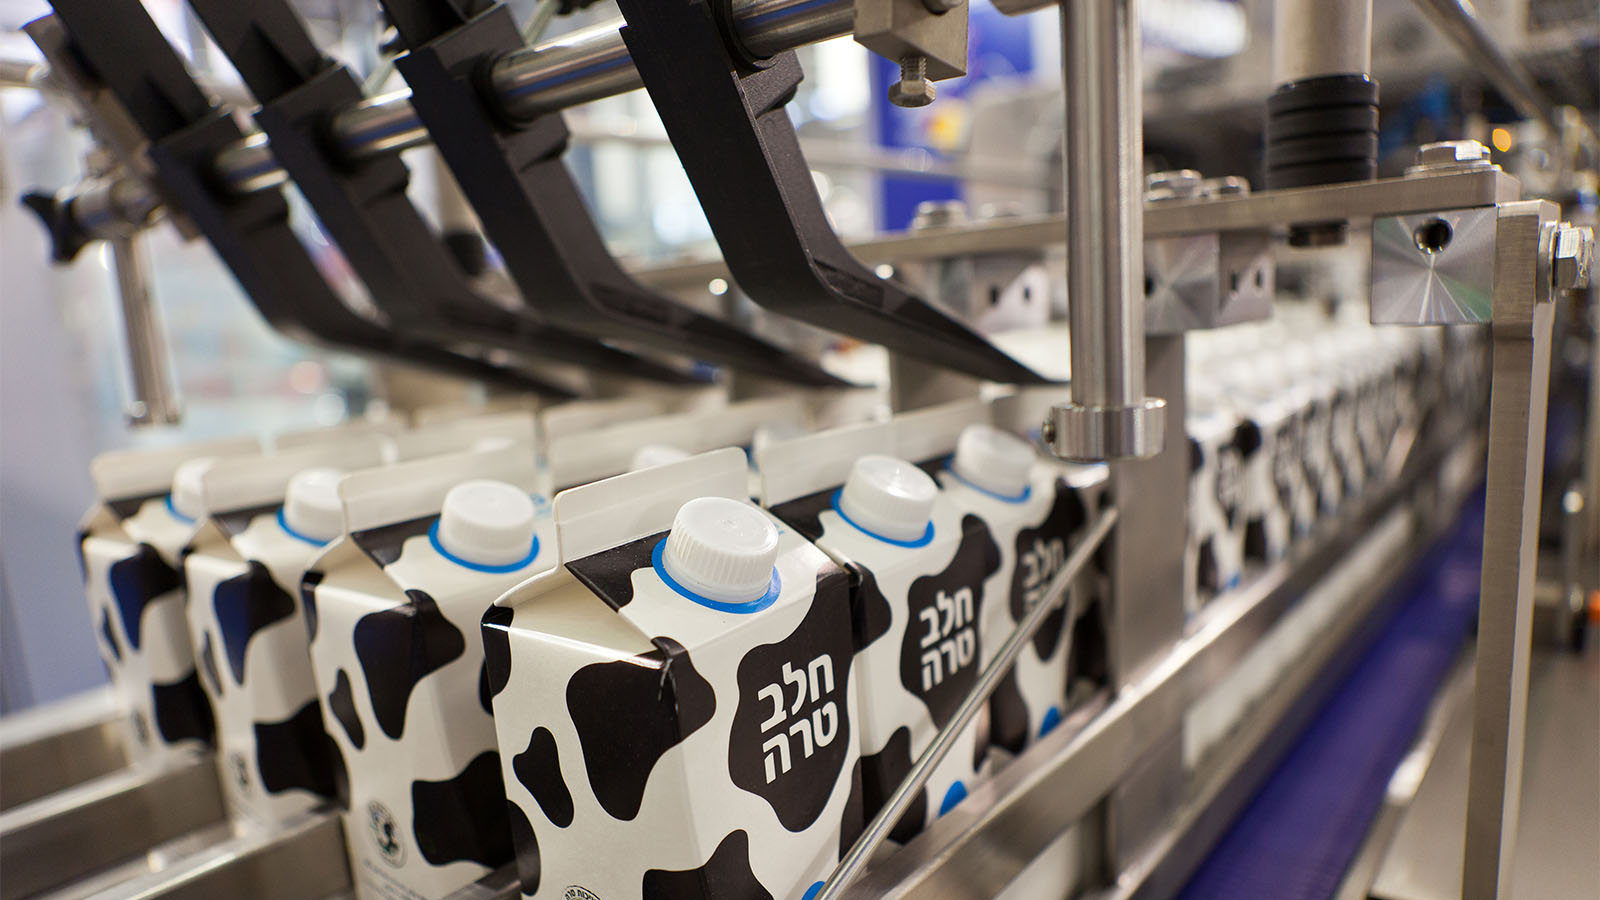 אריזת חלב במפעל (Editorial credit: Robert Kneschke / Shutterstock.com)